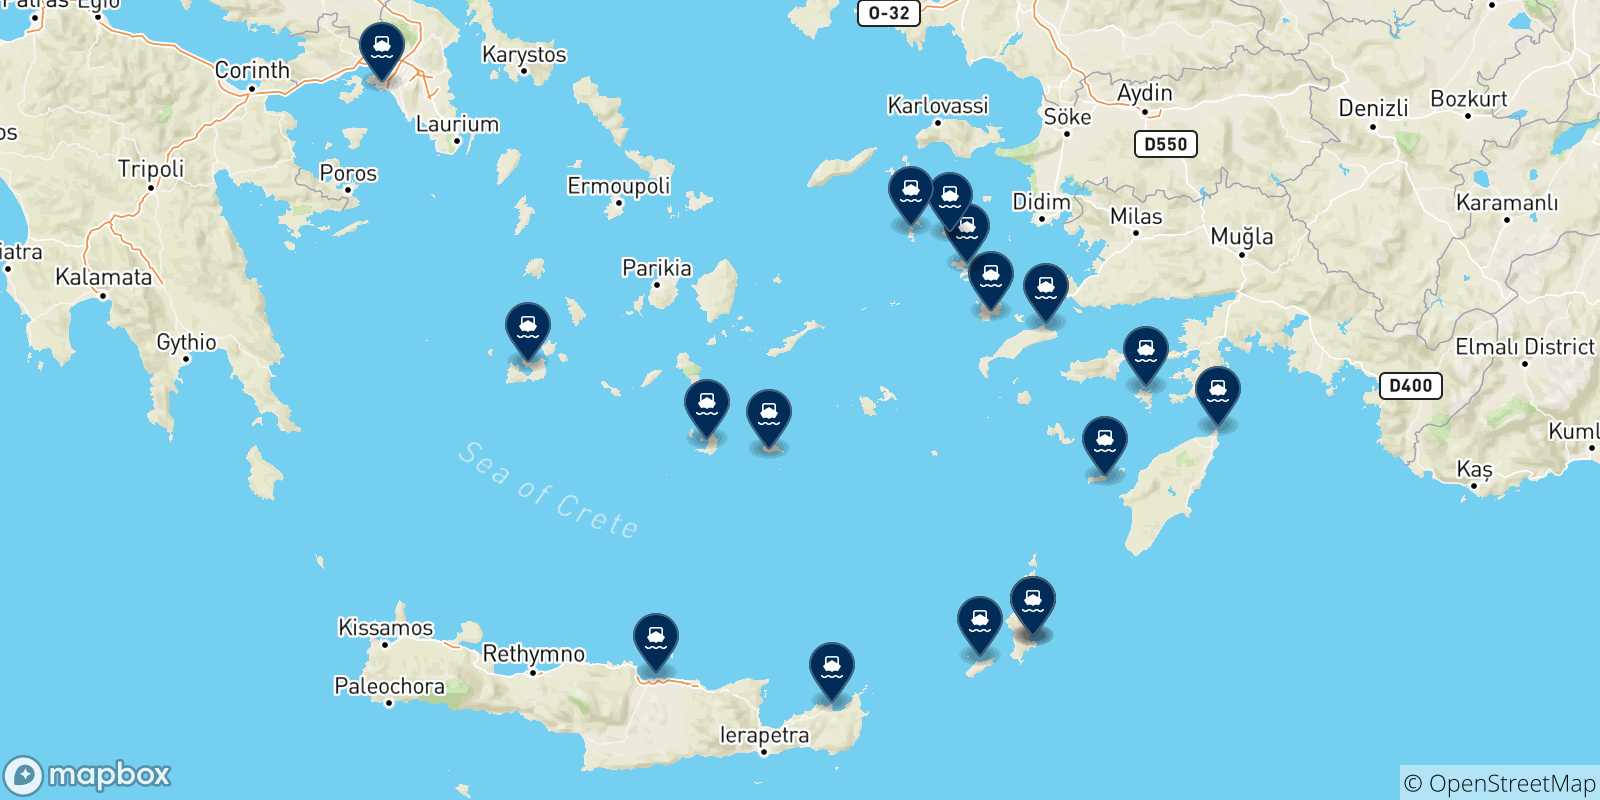 Mappa delle possibili rotte tra Karpathos e la Grecia